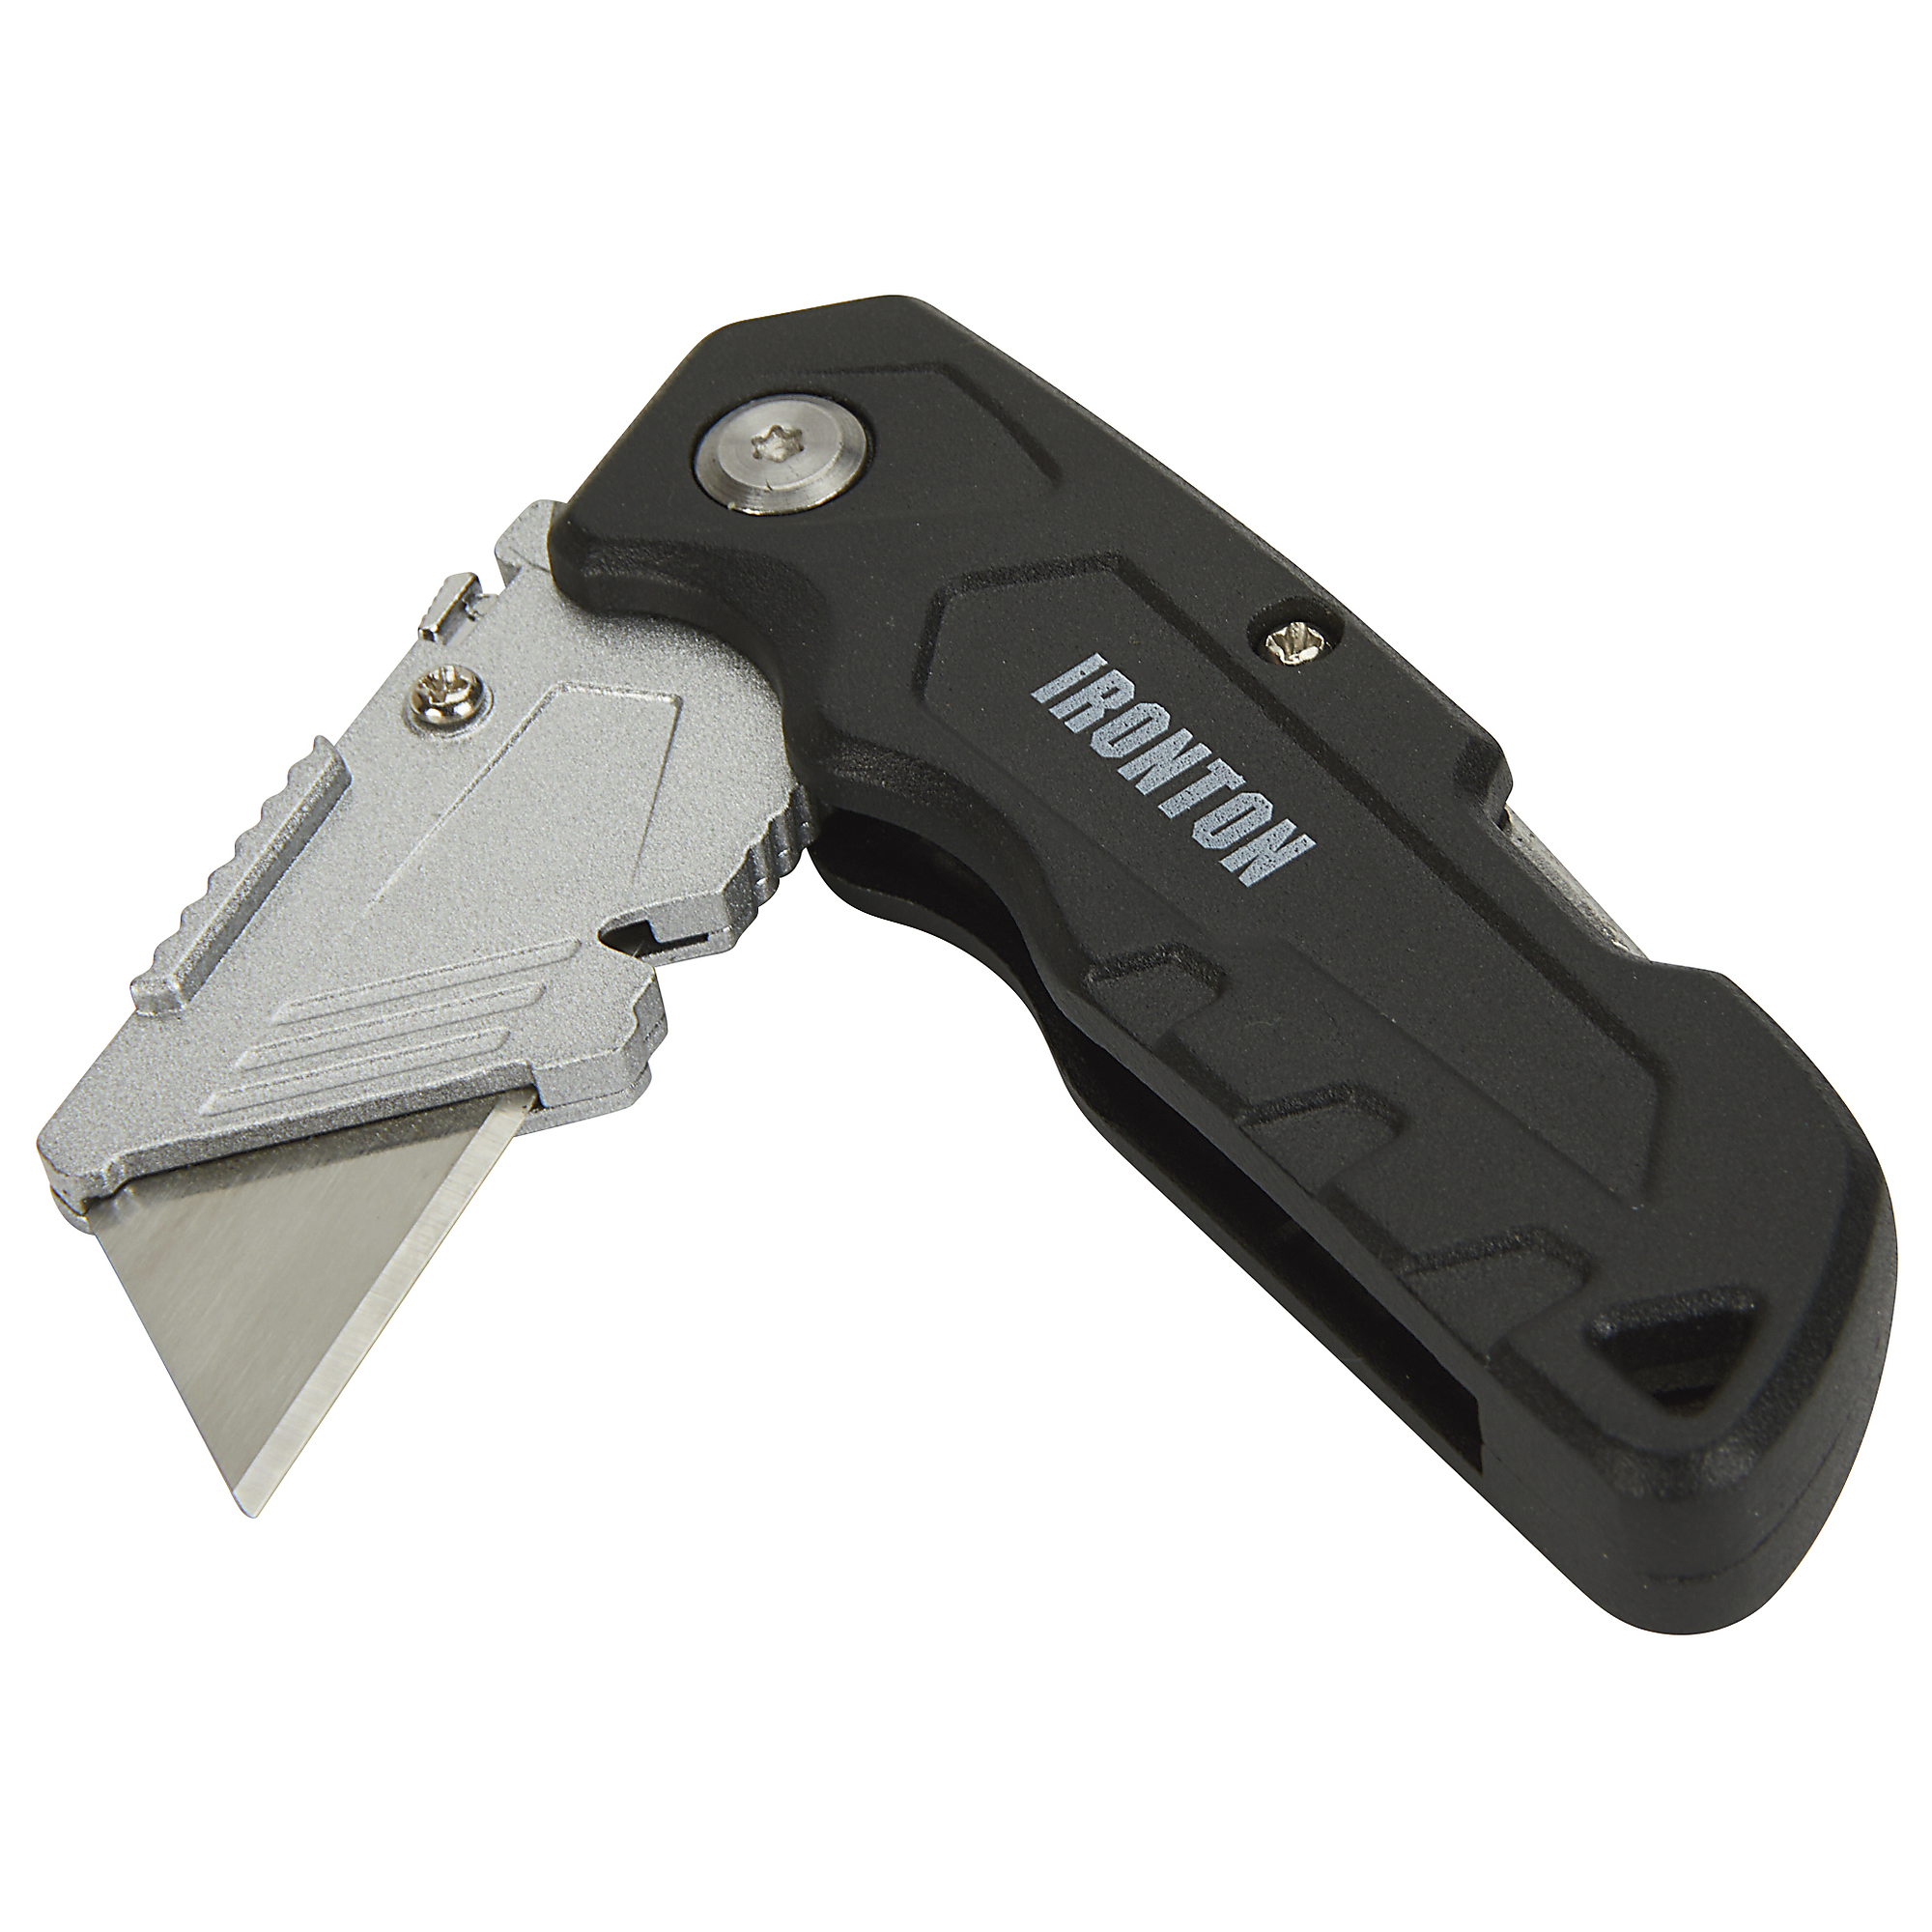 True Utility Folding Blade Pocket Knife Multitool - Berwyn Lawnmower